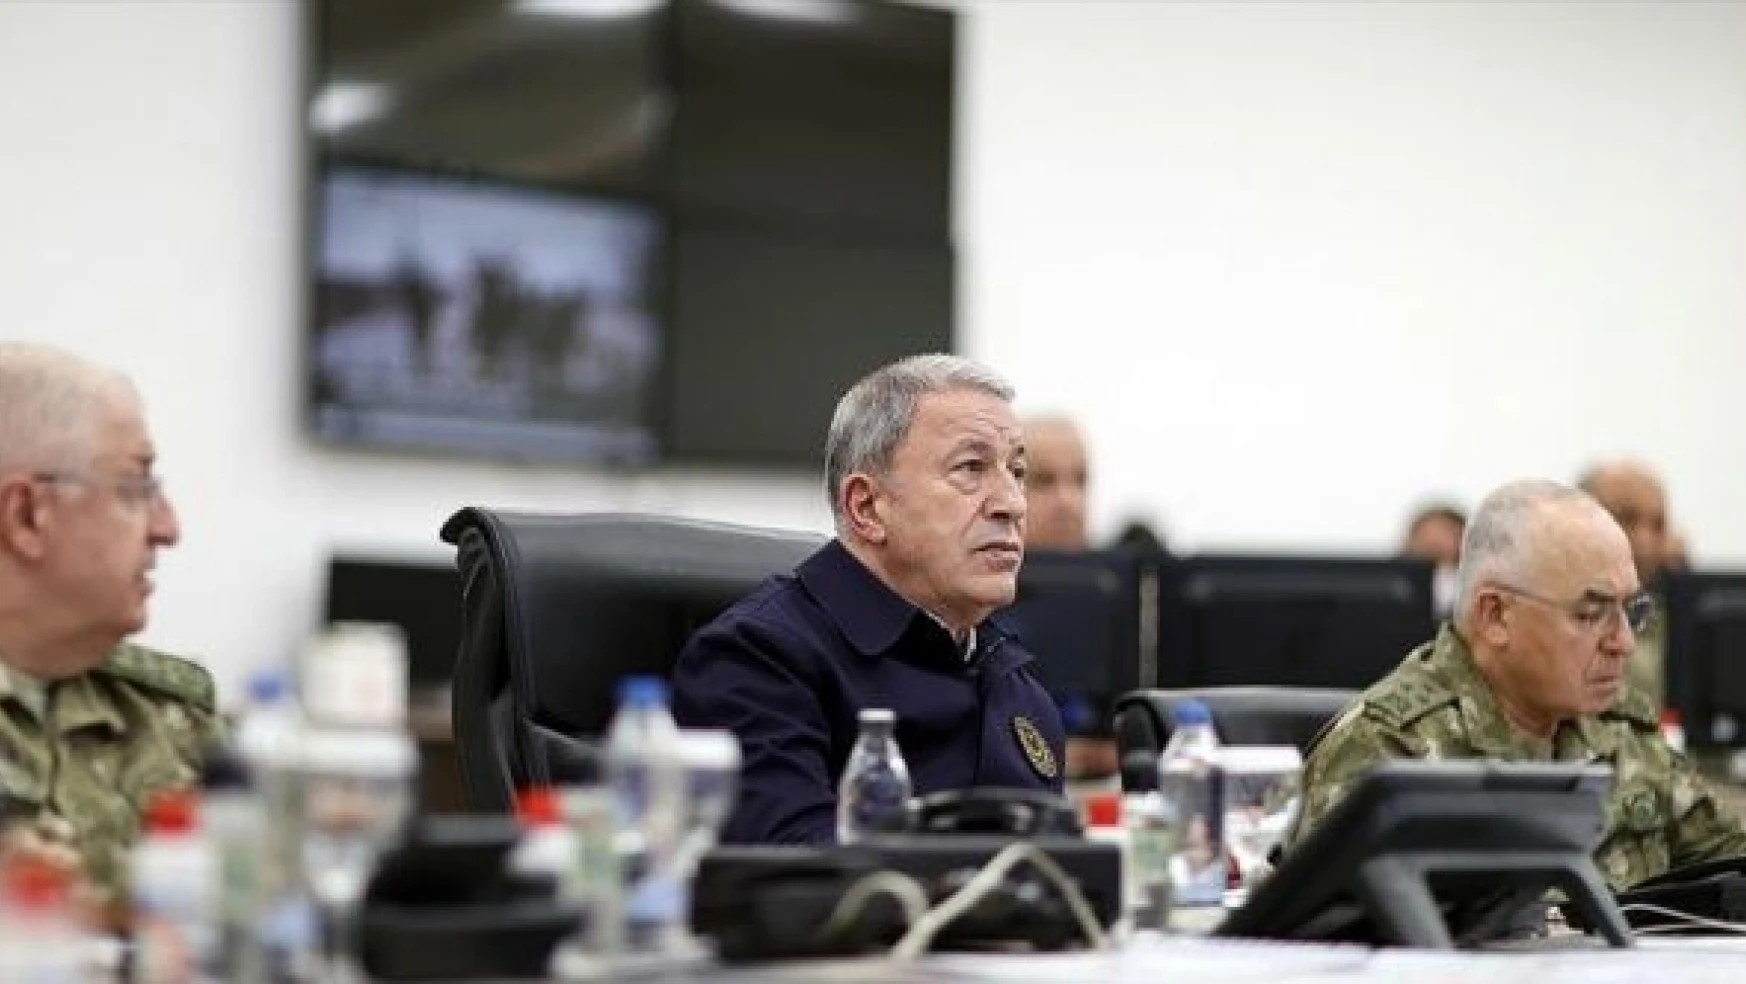 Milli Savunma Bakanı Akar: "Şu ana kadar 61 terörist etkisiz hale getirildi"